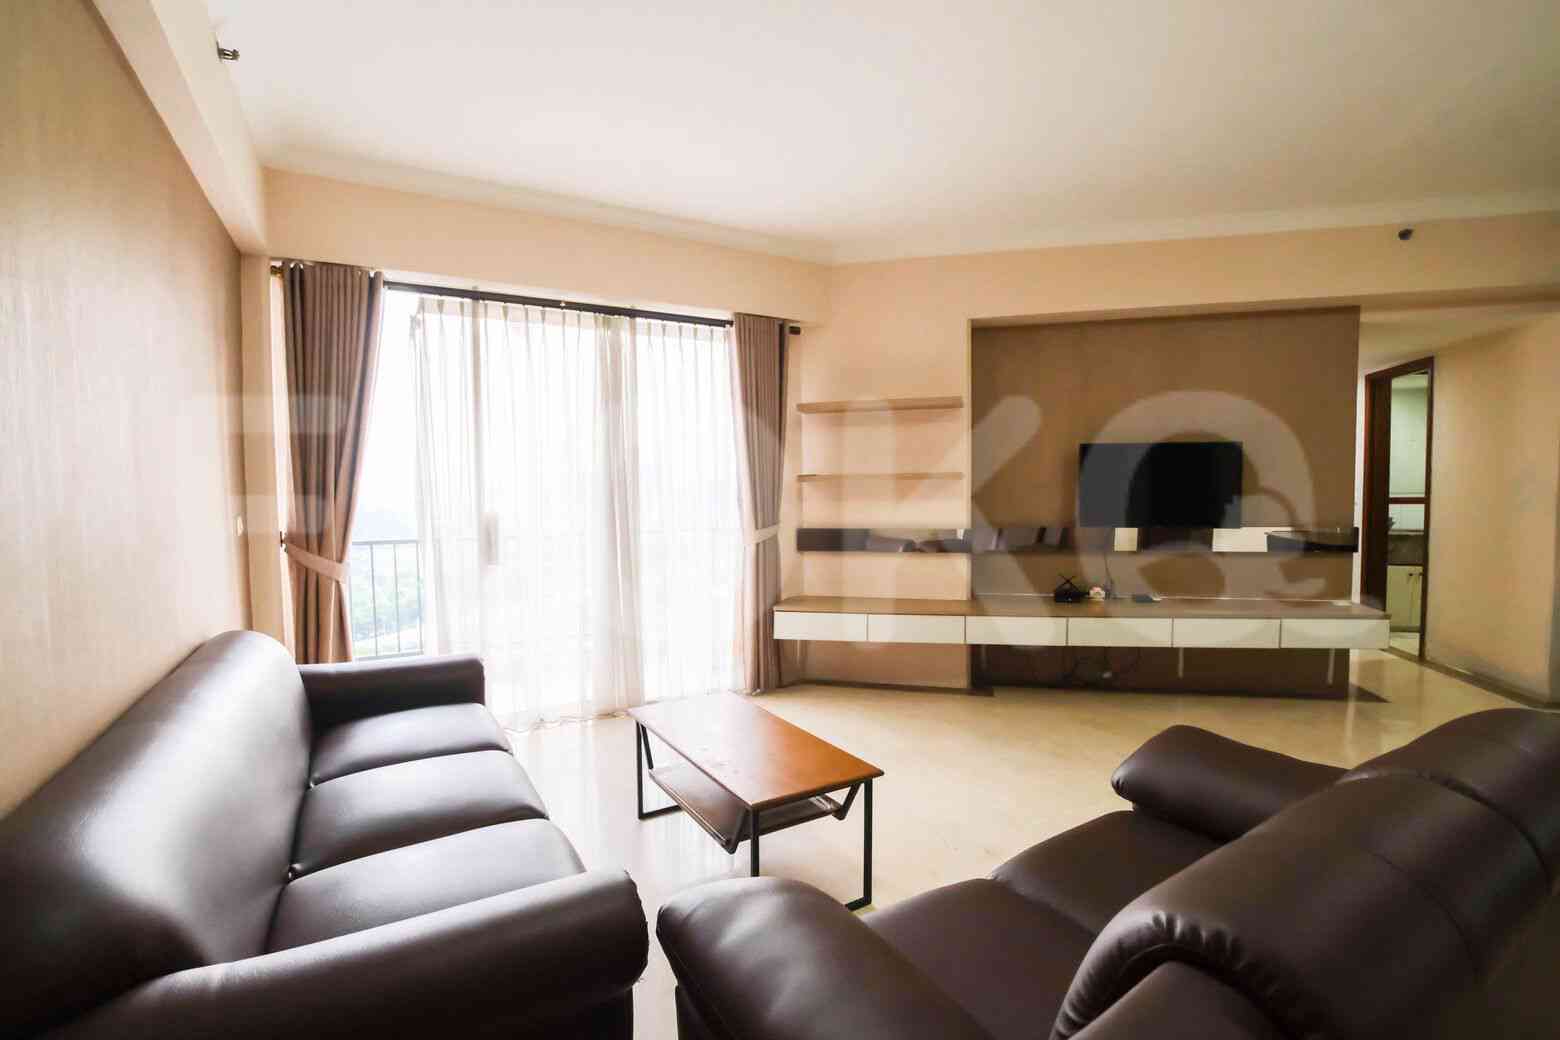 2 Bedroom on 21st Floor for Rent in Puri Casablanca - fte68b 1